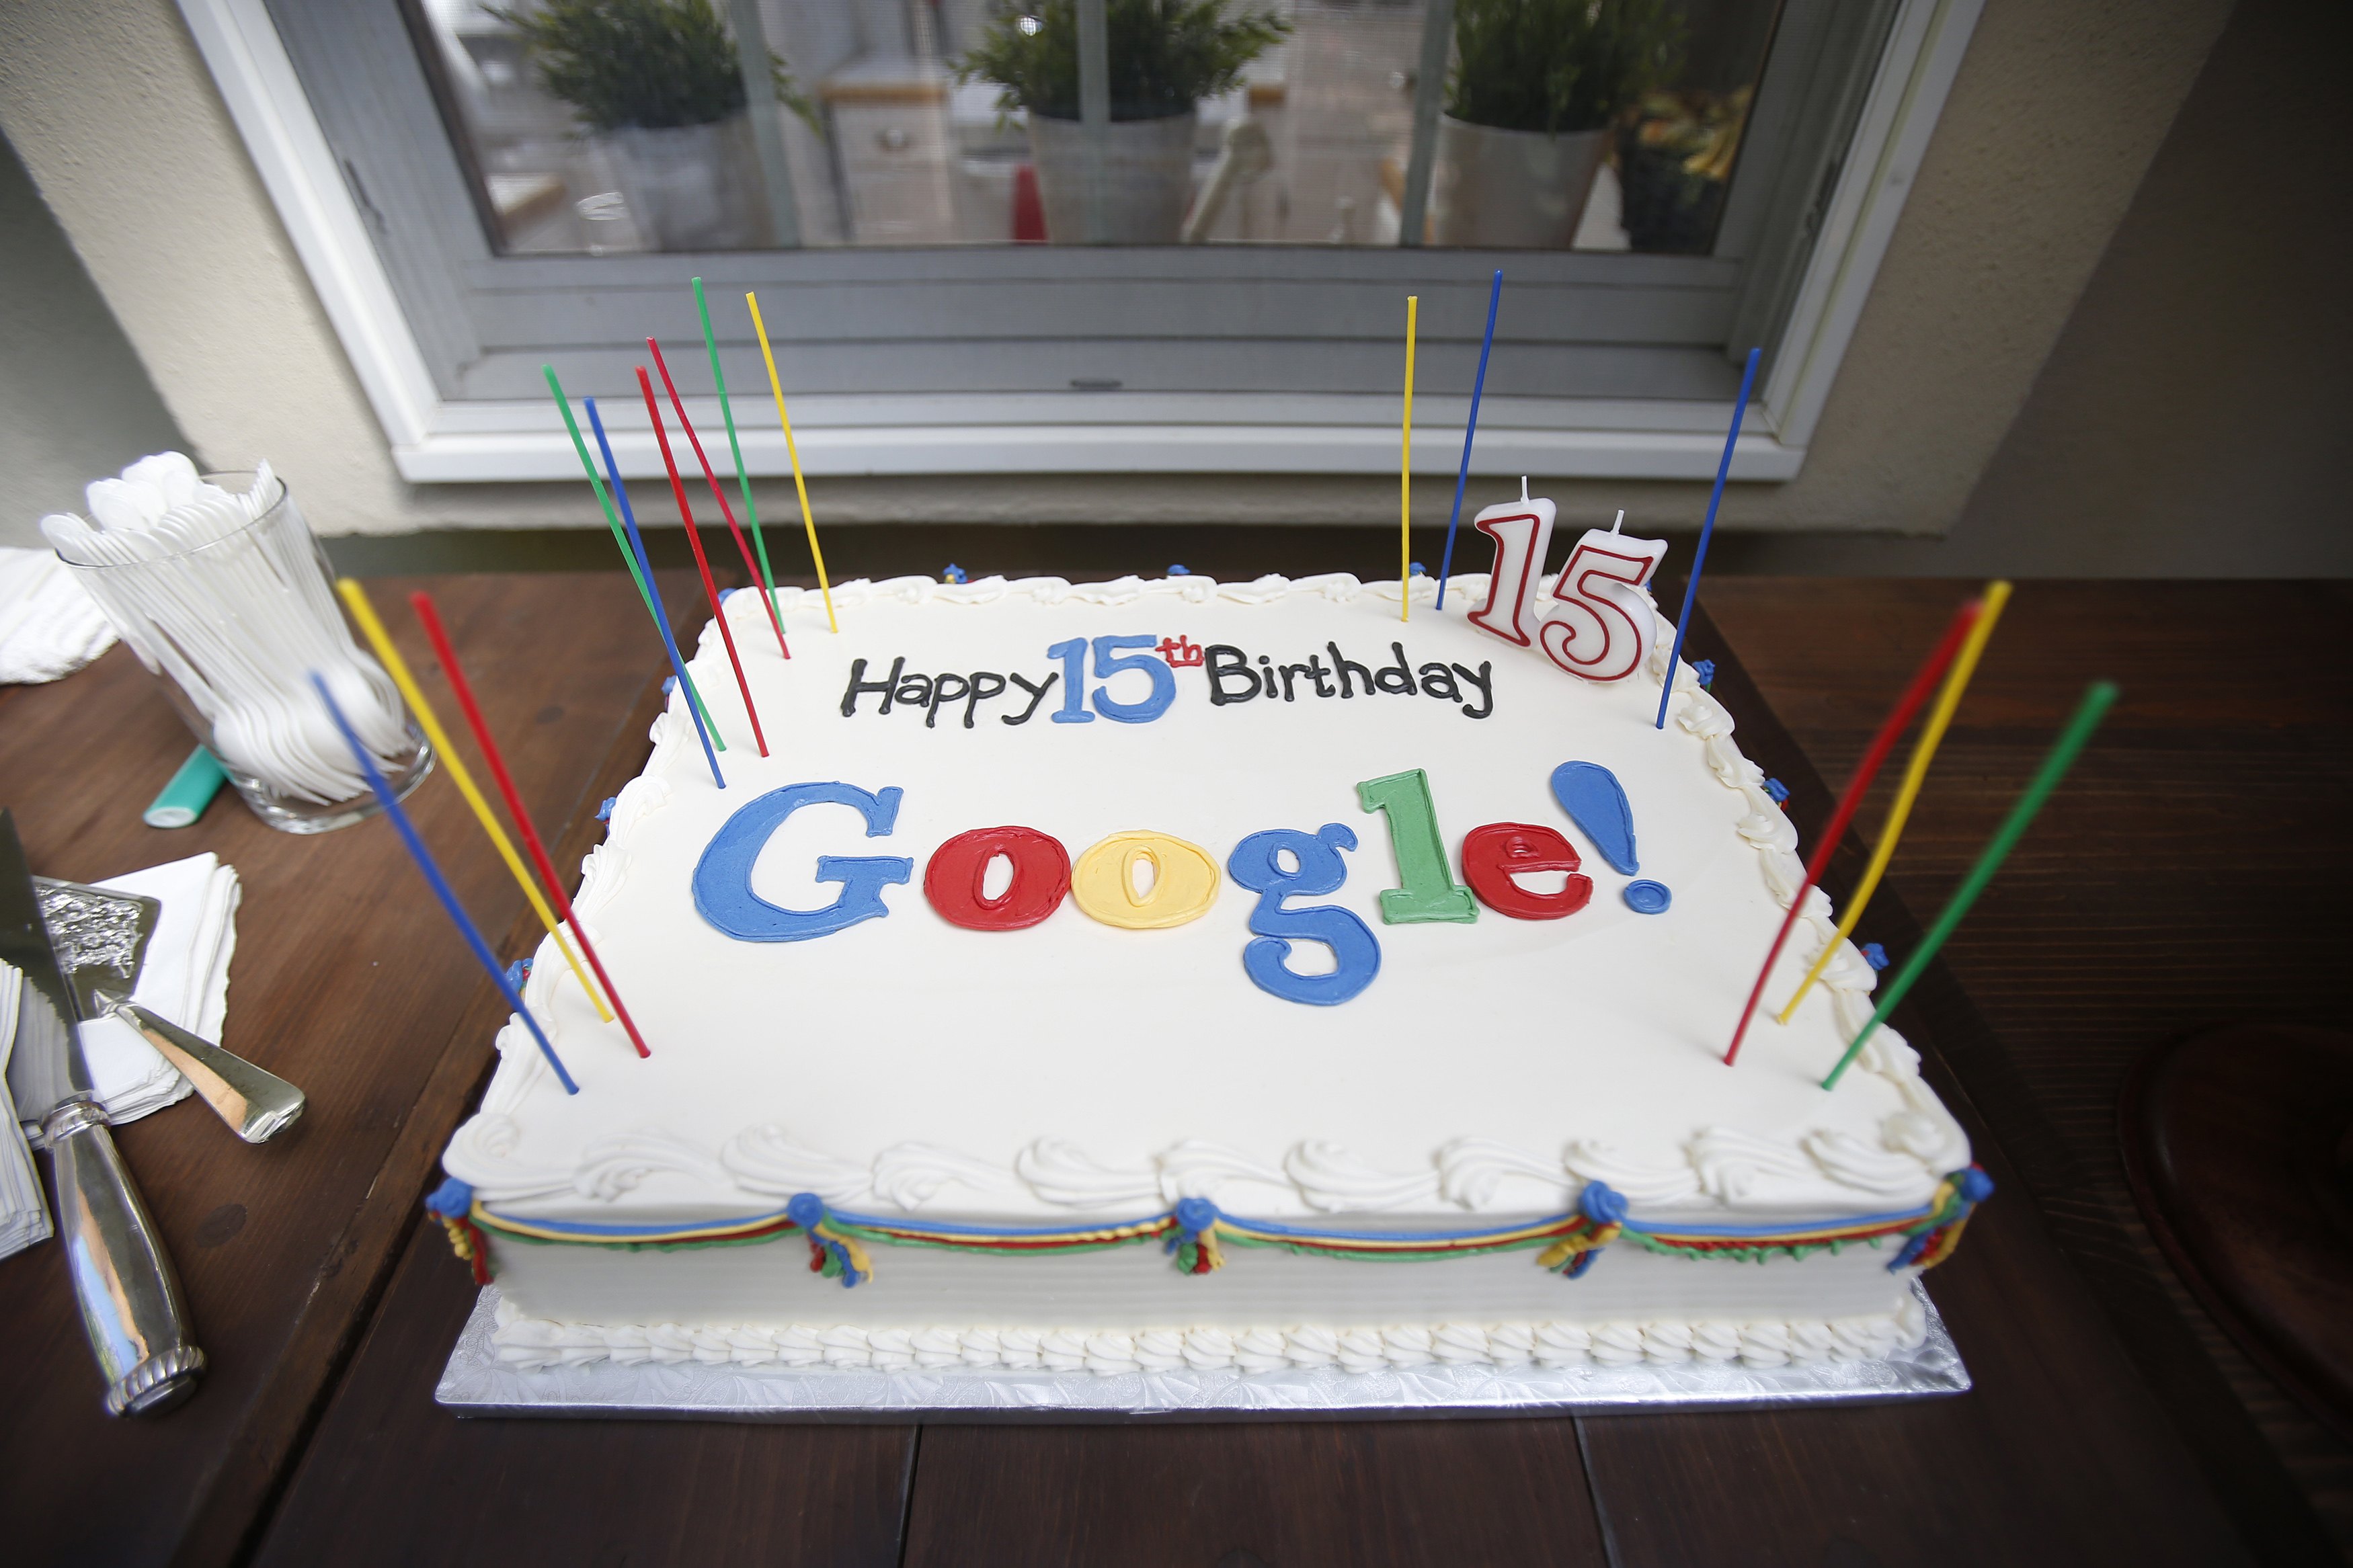 At 15, Google revisits past, eyes future